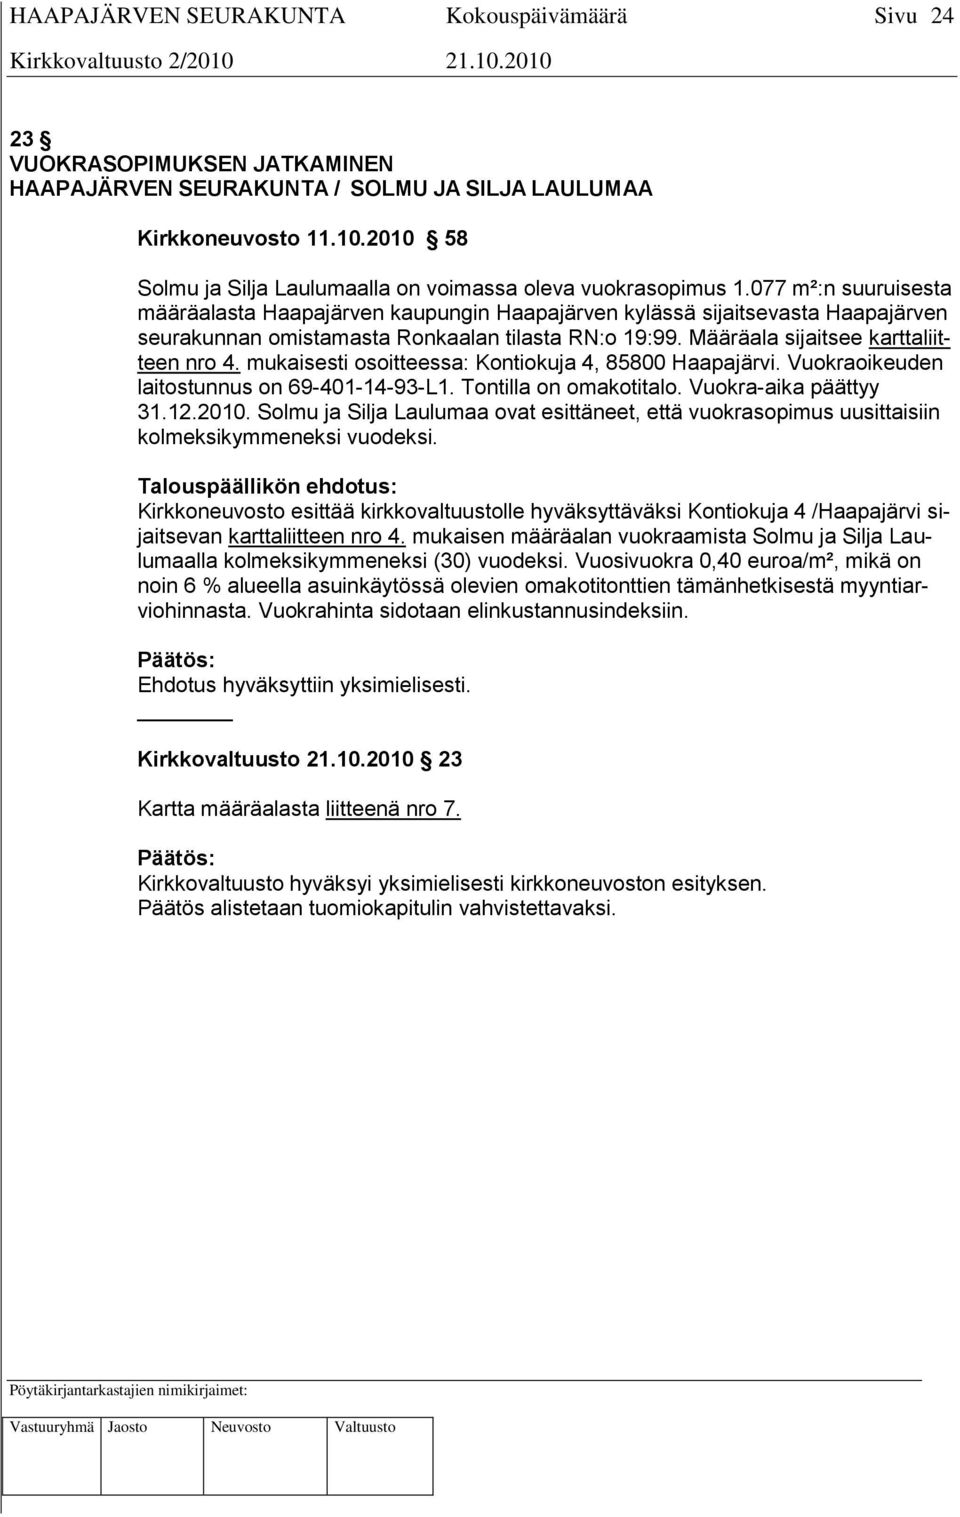 mukaisesti osoitteessa: Kontiokuja 4, 85800 Haapajärvi. Vuokraoikeuden laitostunnus on 69-401-14-93-L1. Tontilla on omakotitalo. Vuokra-aika päättyy 31.12.2010.